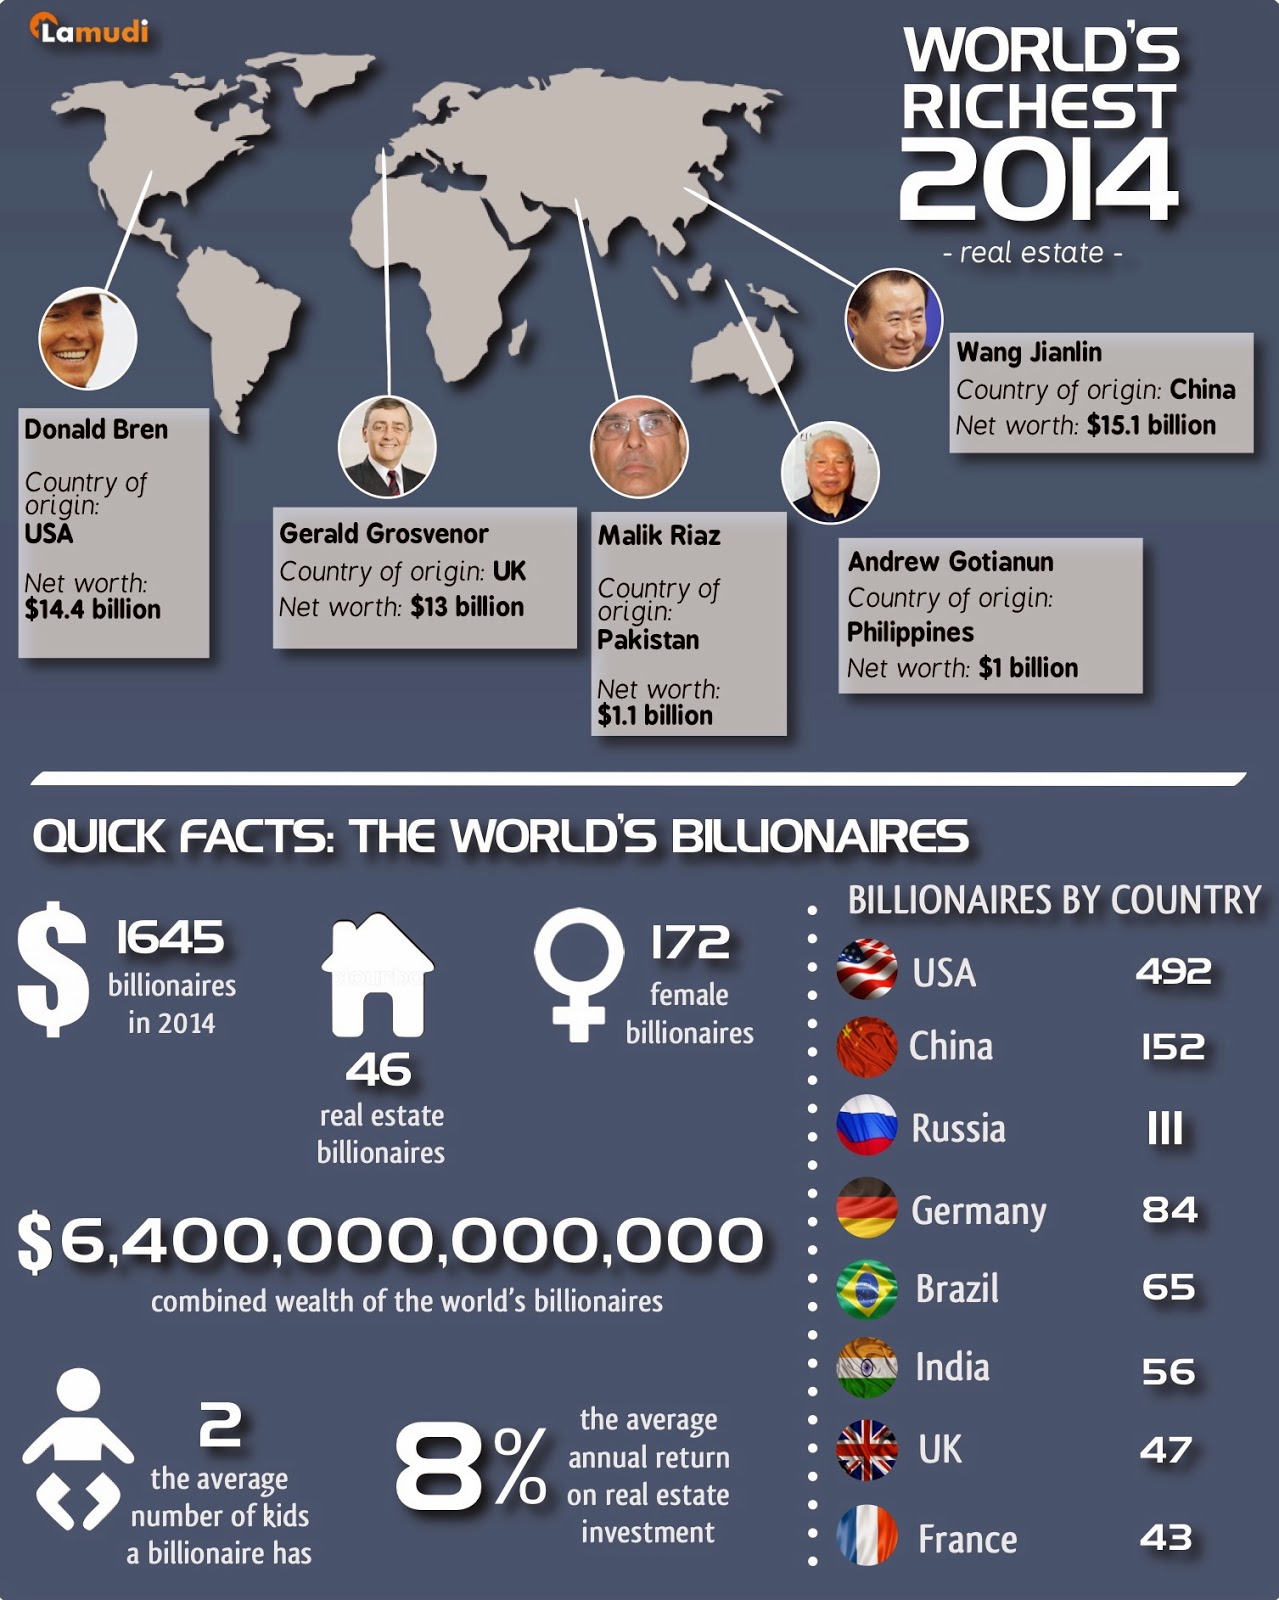 World's Richest 2014 Infographic